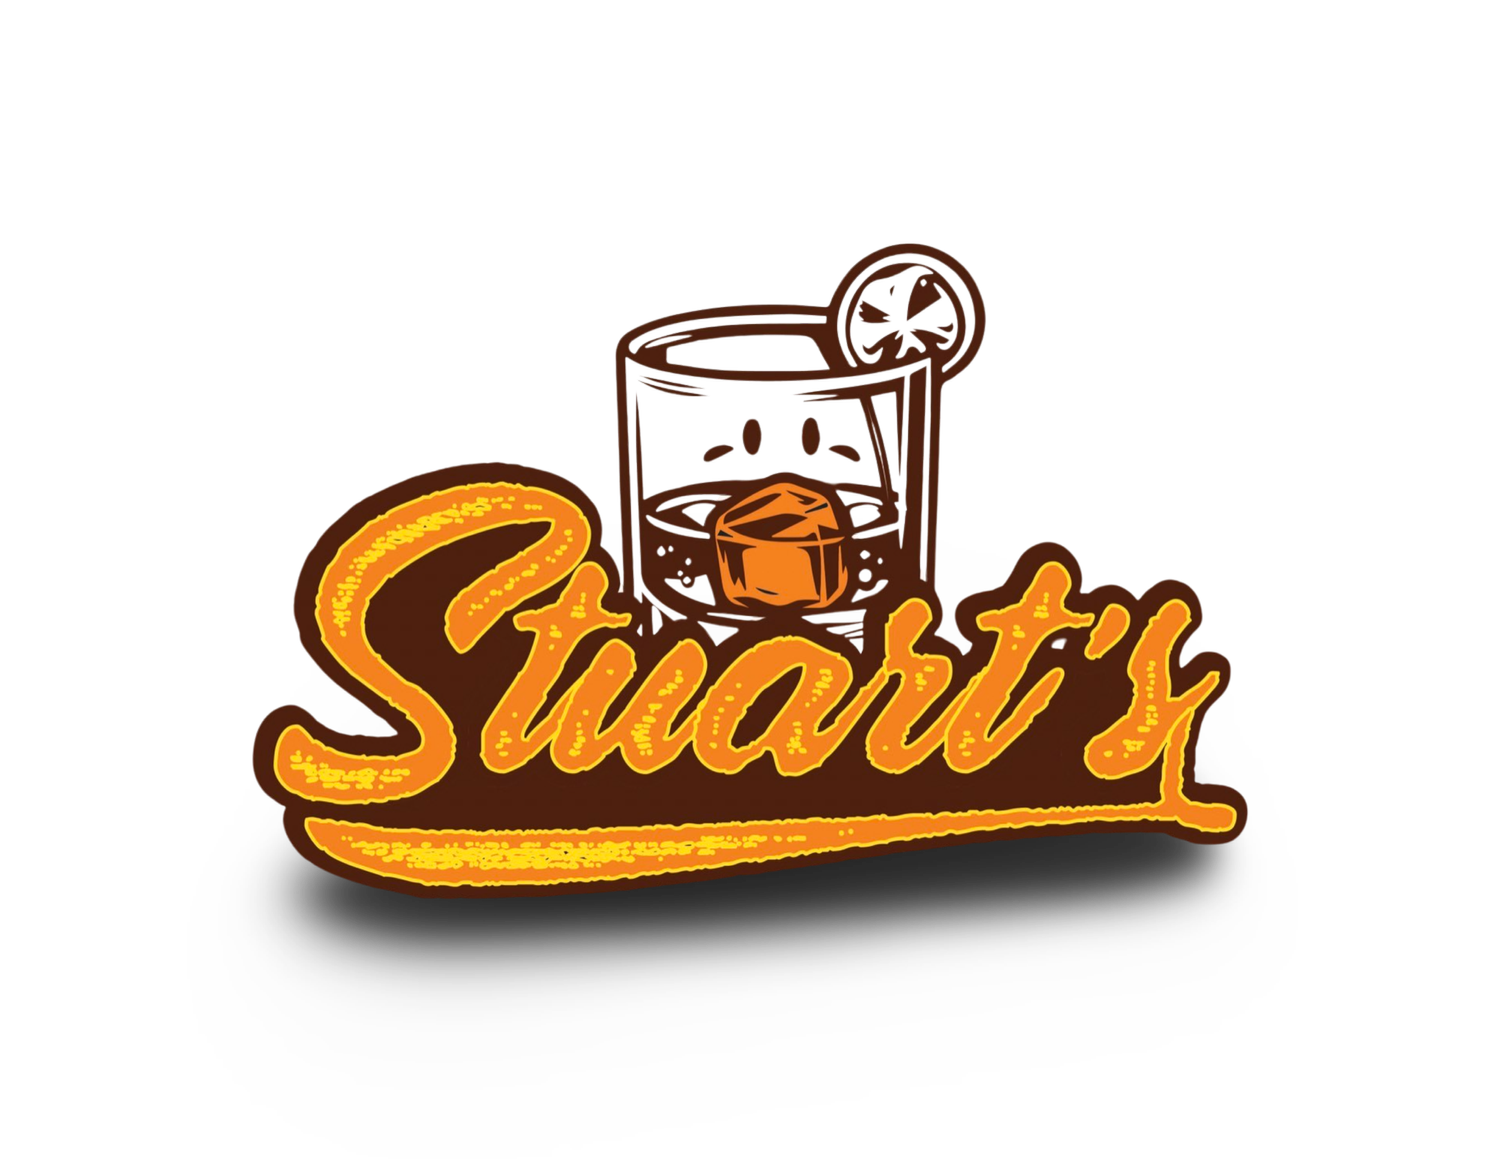 Stuart’s